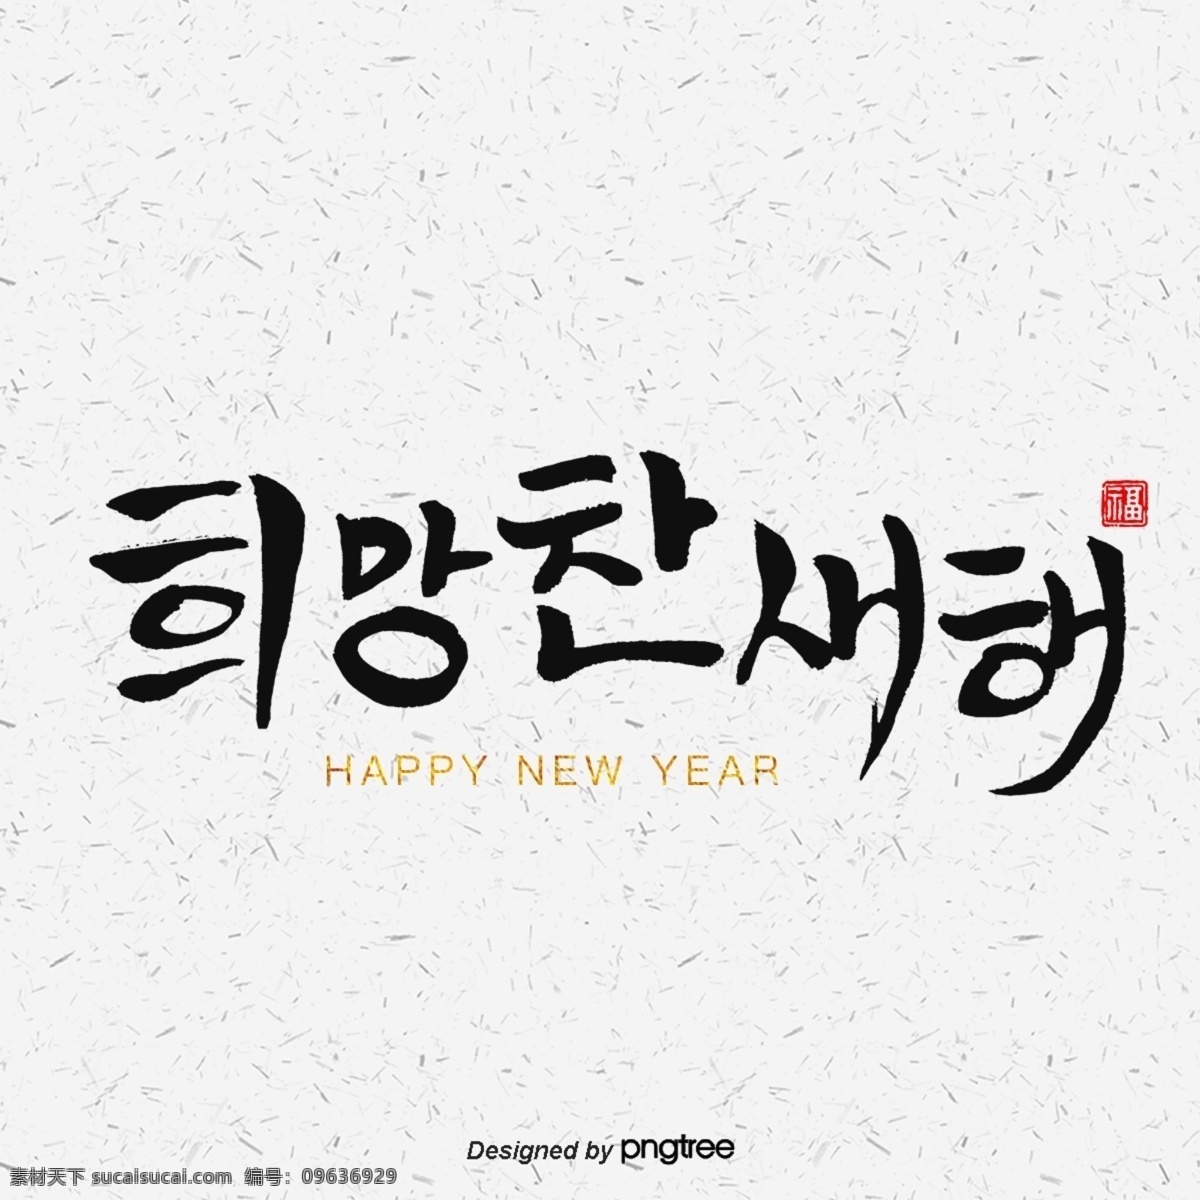 新 年 充满 希望 2019 新年快乐 光明 猪 福 快乐的猪 祝你新年快乐 书法字符 新的一年 里 你是唯一的